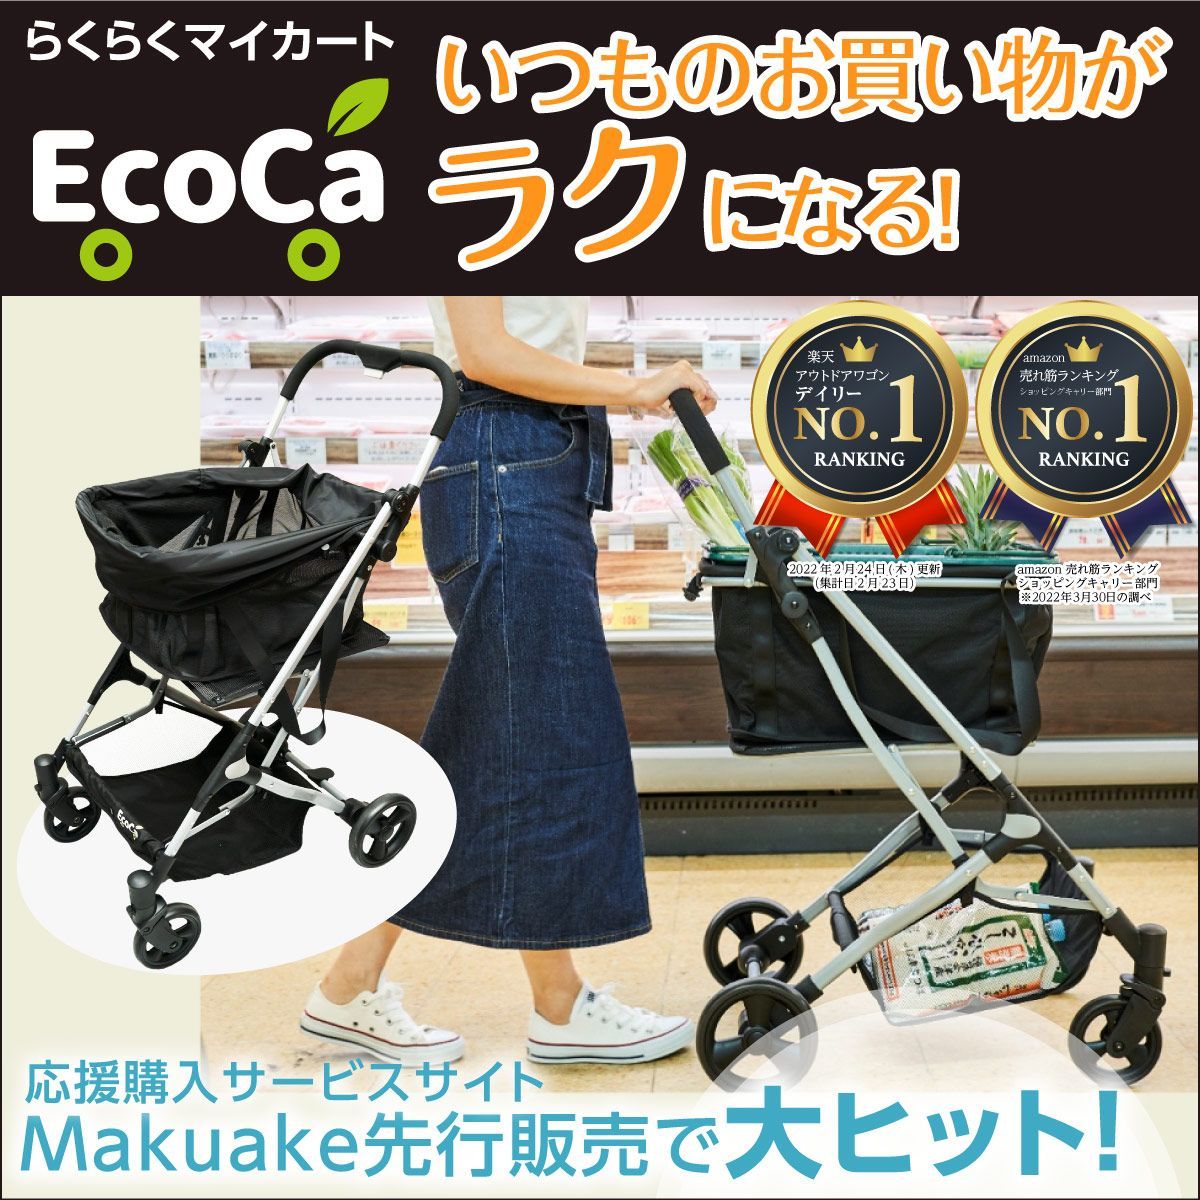 エコカ (Ecoca) ショッピングカート本体＋マイバッグセット【中古品 